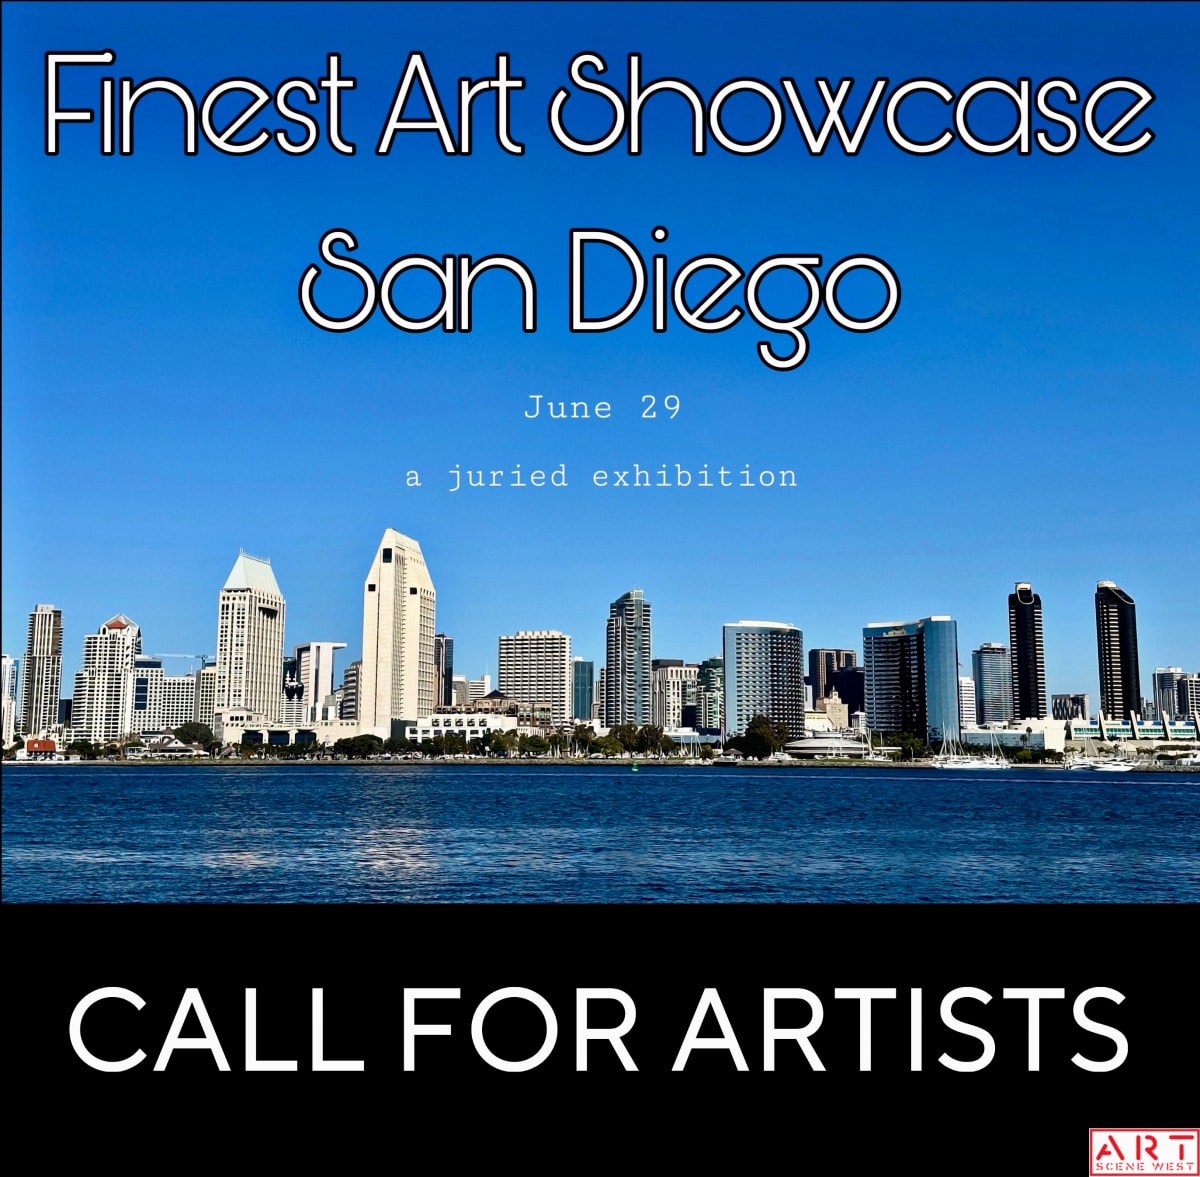 Finest Art Showcase San Diego